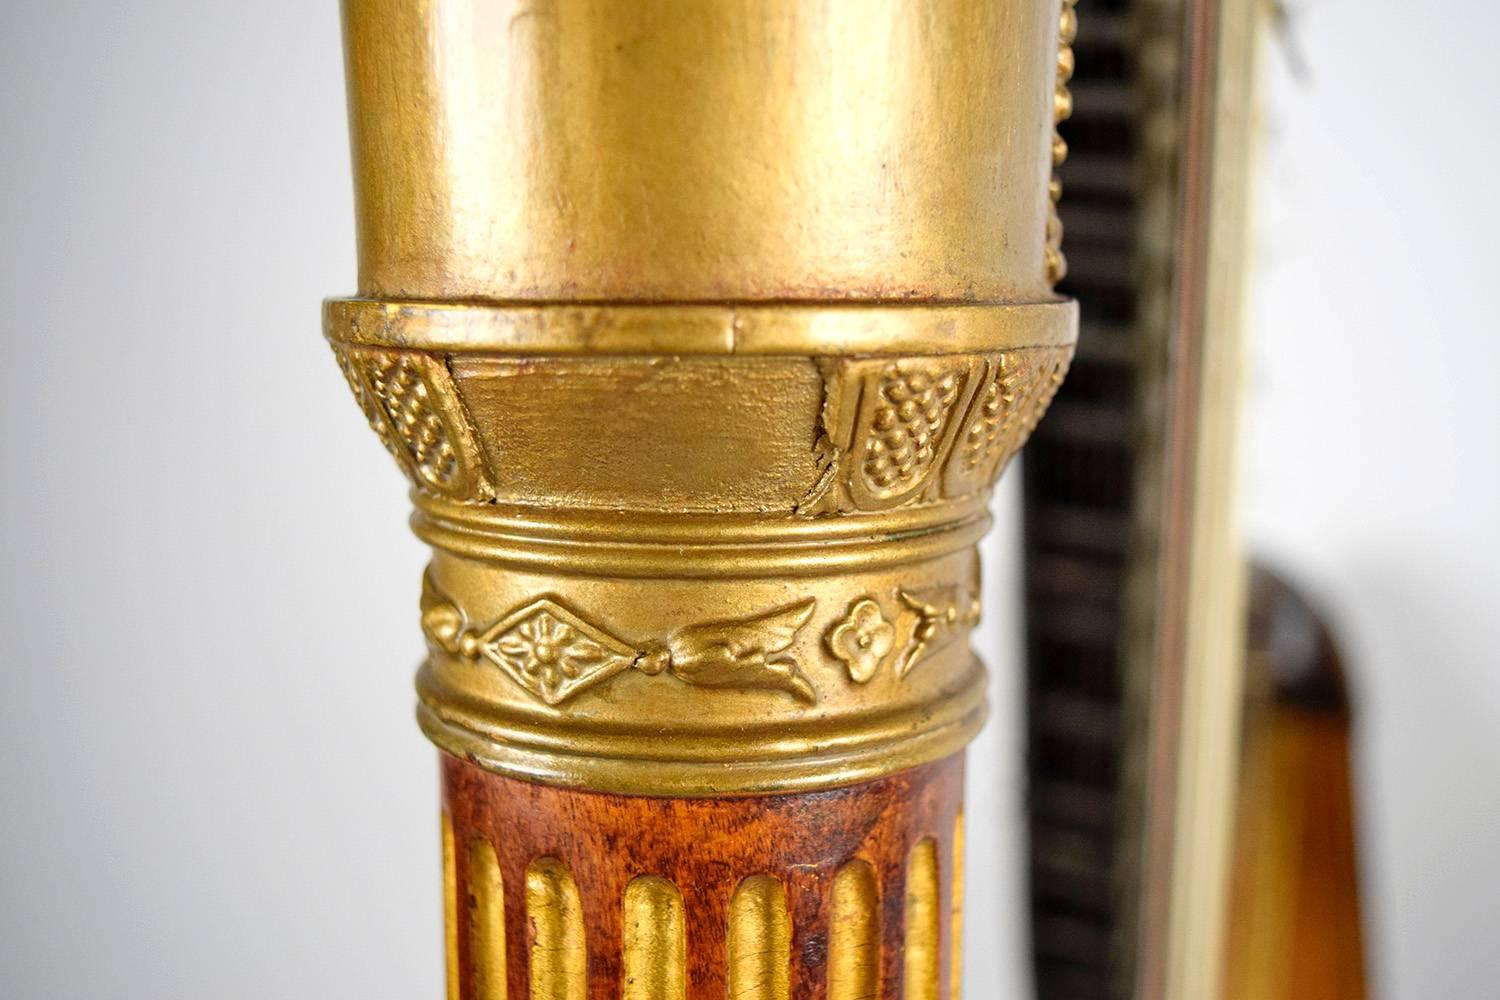 European 19th Century T Dodds London N.582 Musical Harp